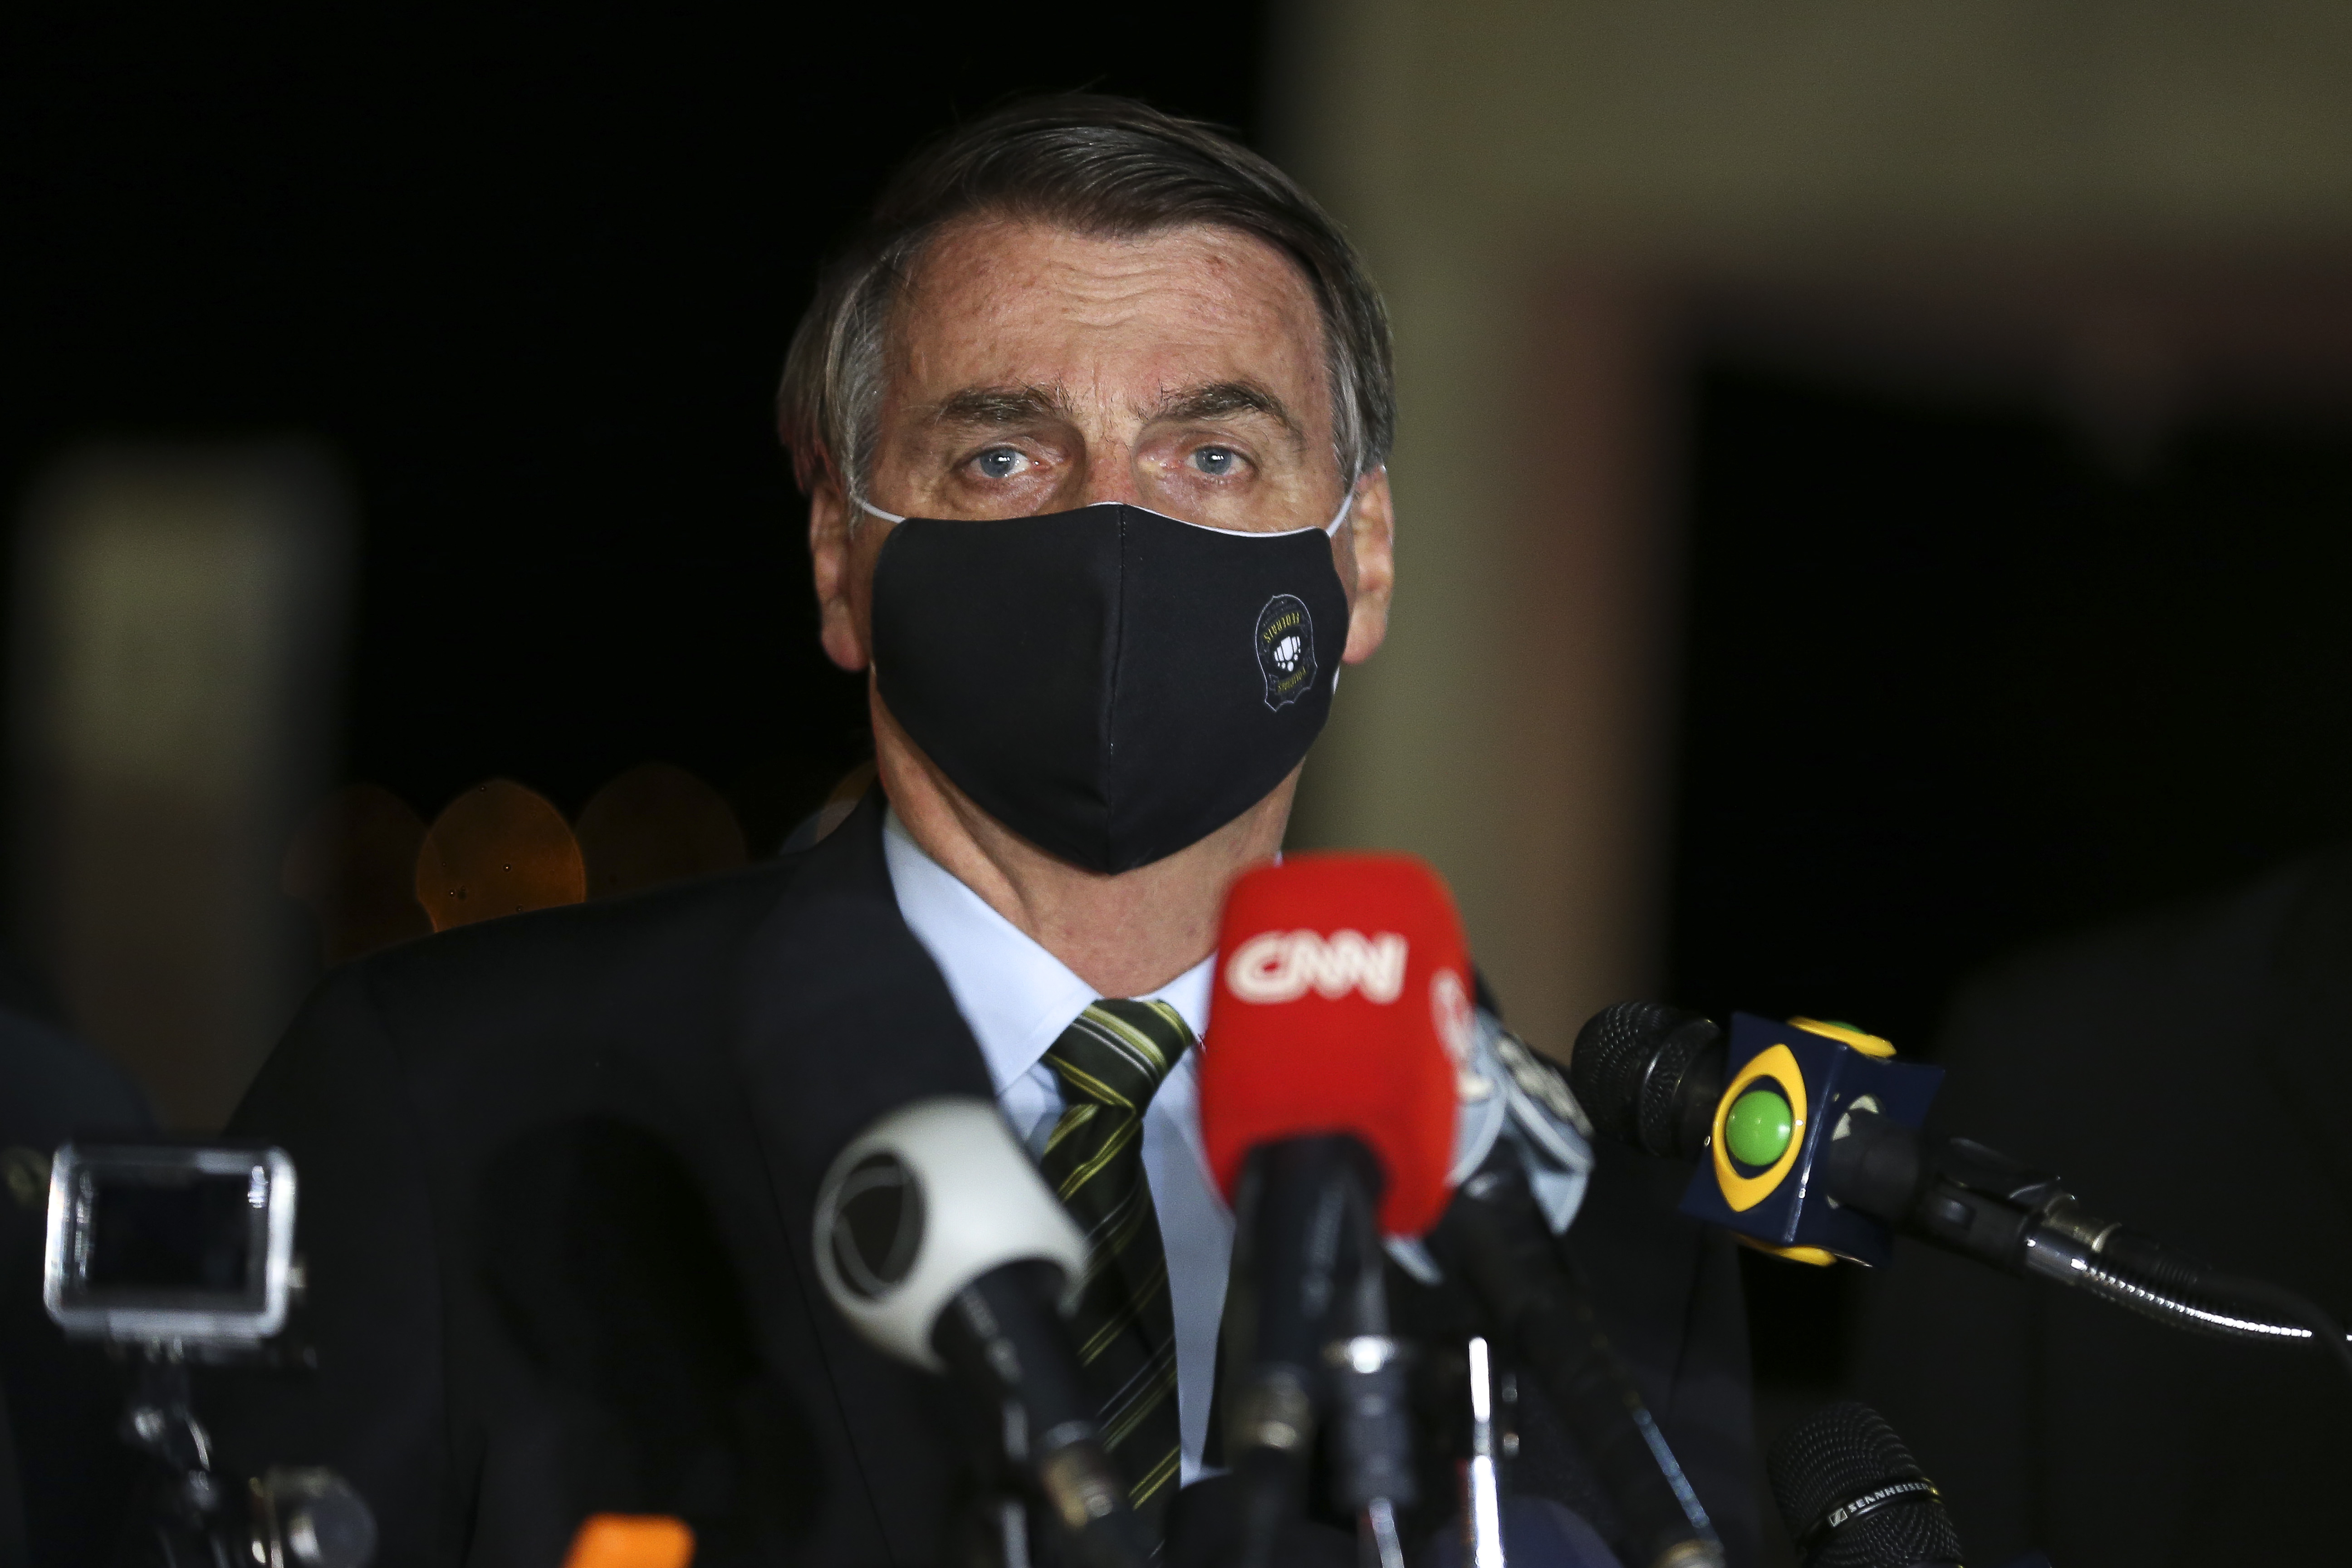 O presidente Jair Bolsonaro conversa com repórteres no Palácio da Alvorada